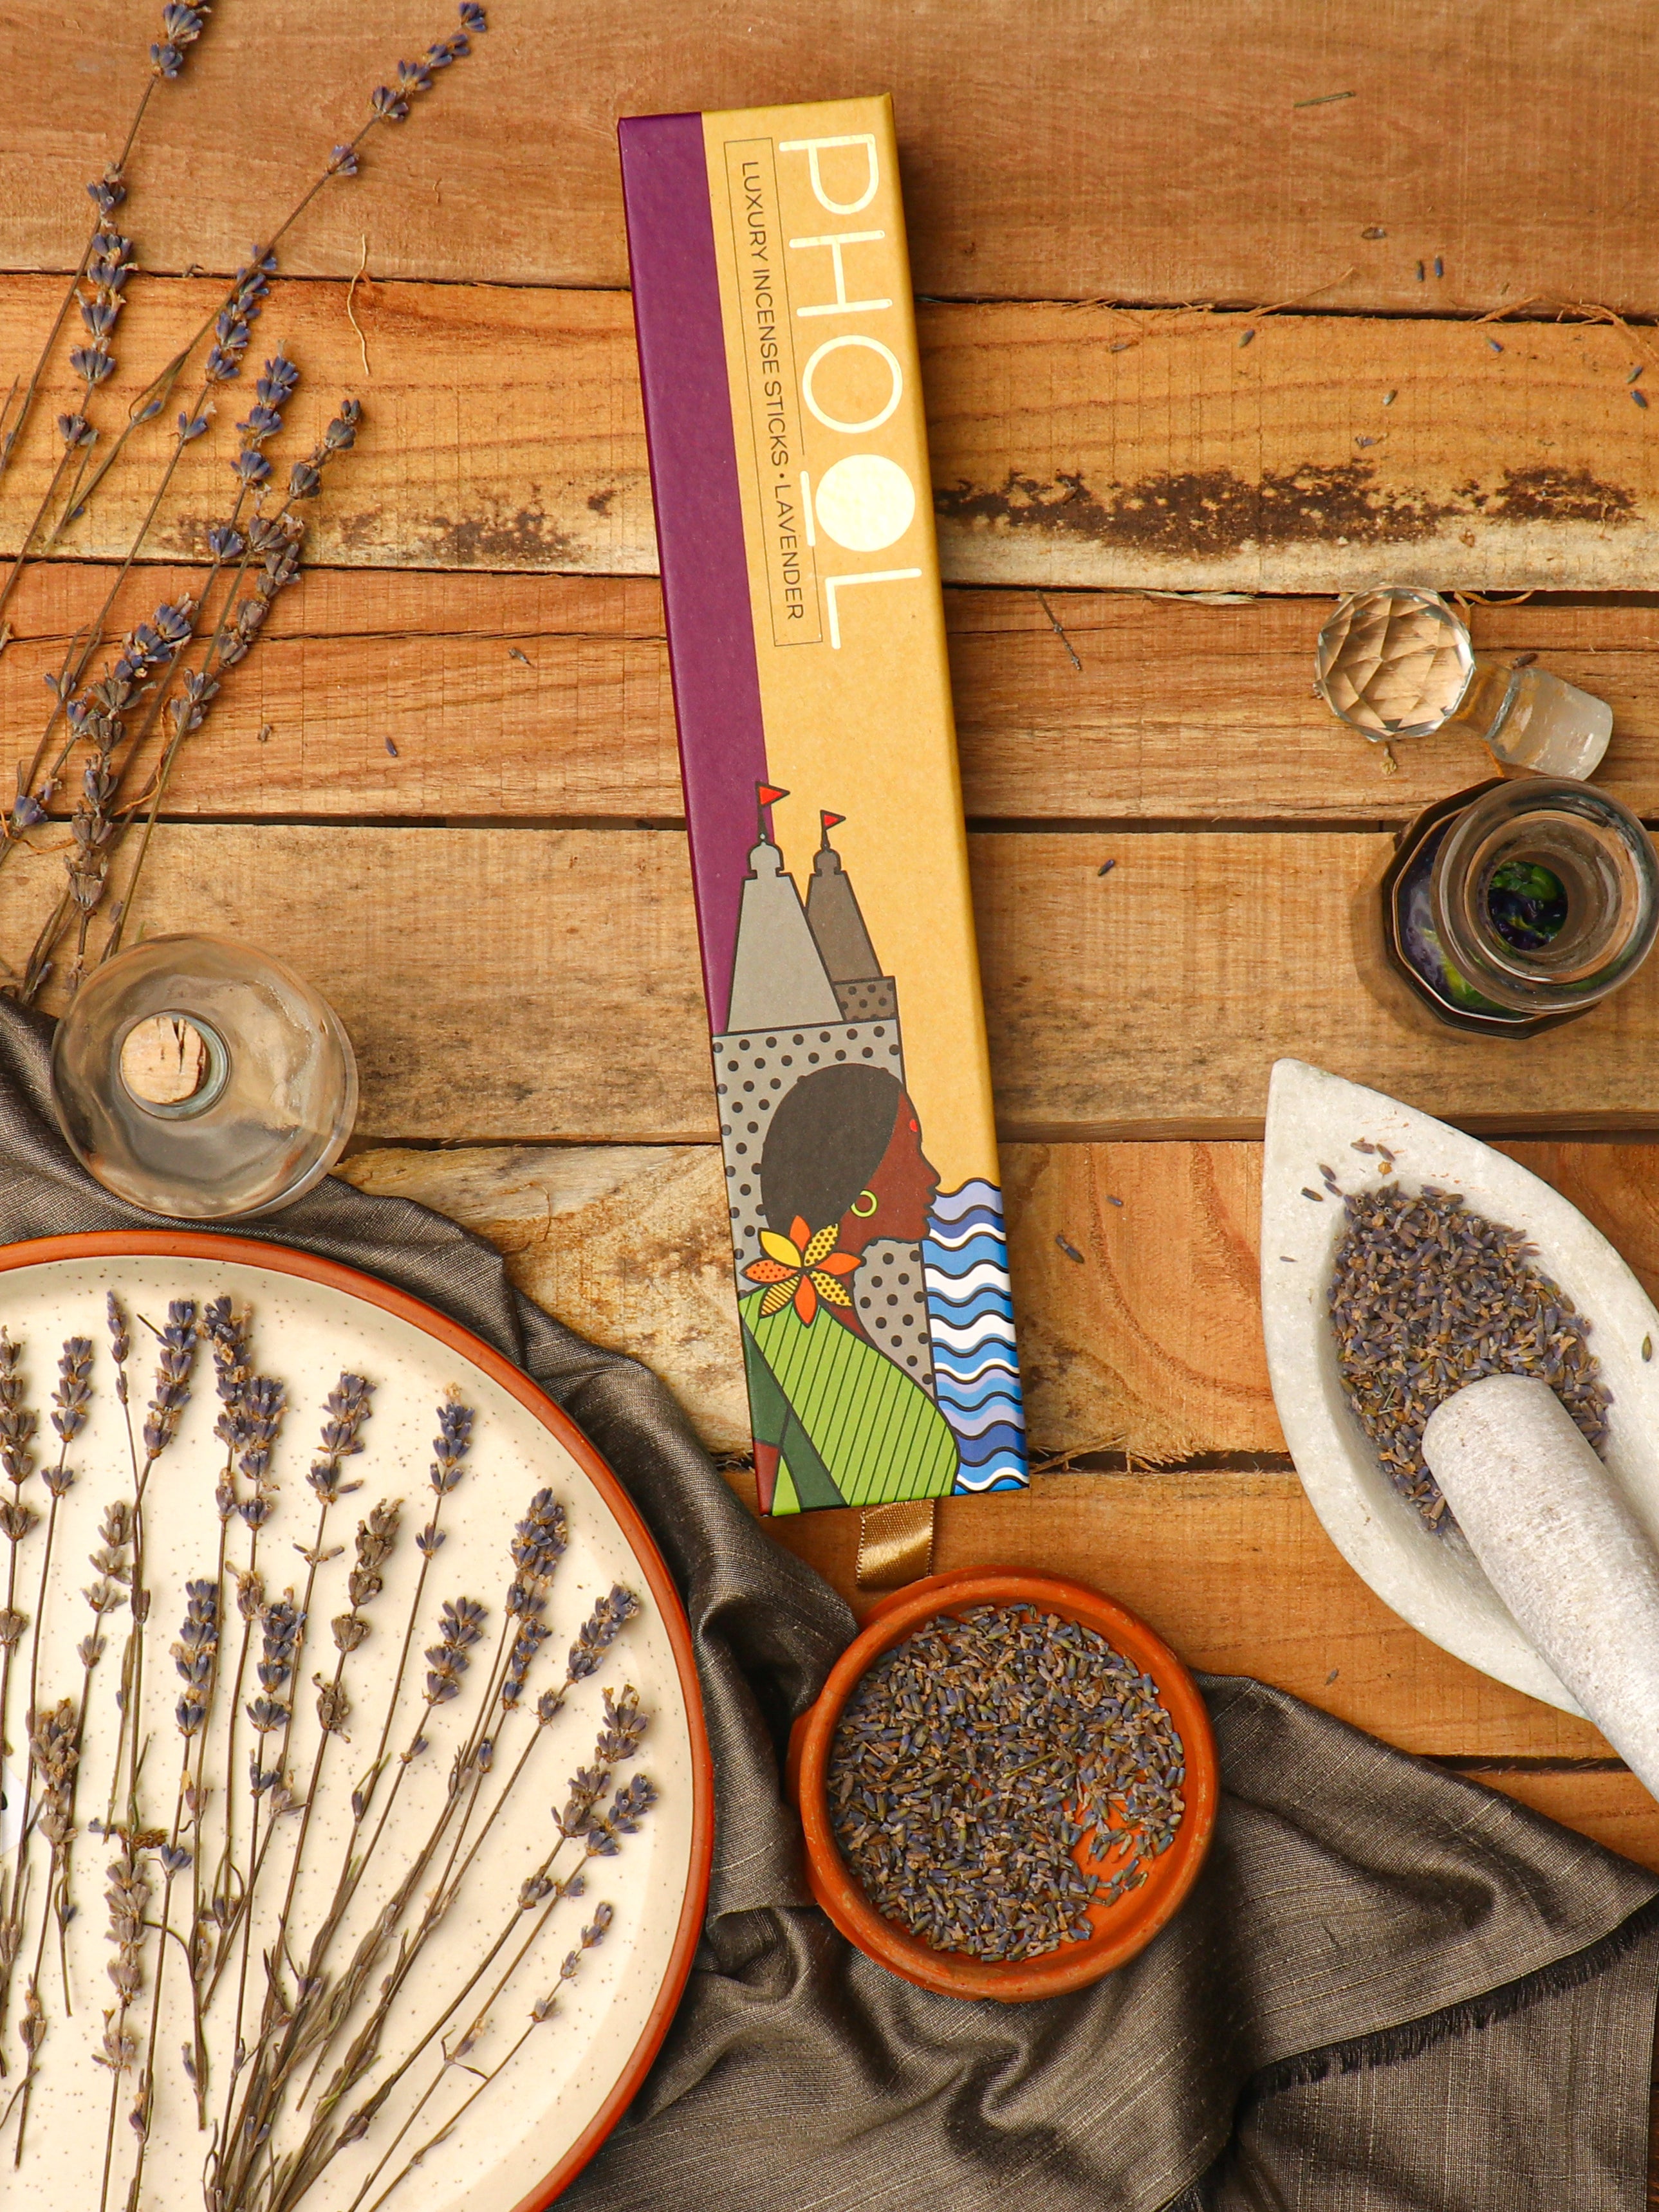 Phool Natural Incense Sticks - Lavender Bundle Packs